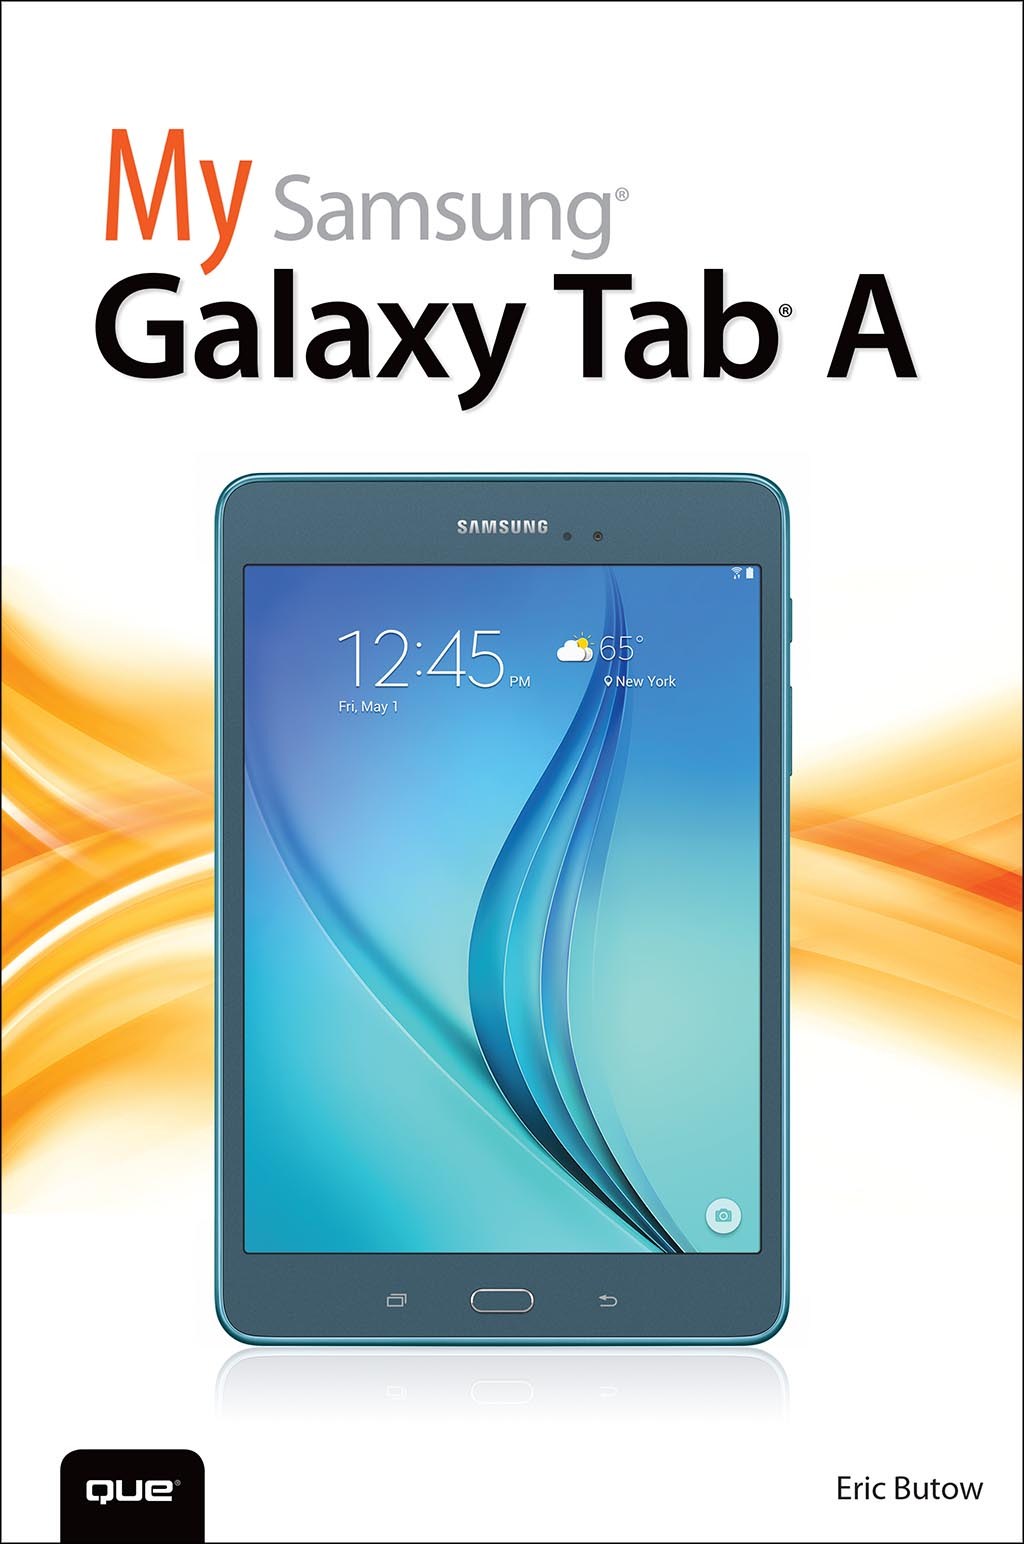 My Samsung Galaxy Tab A